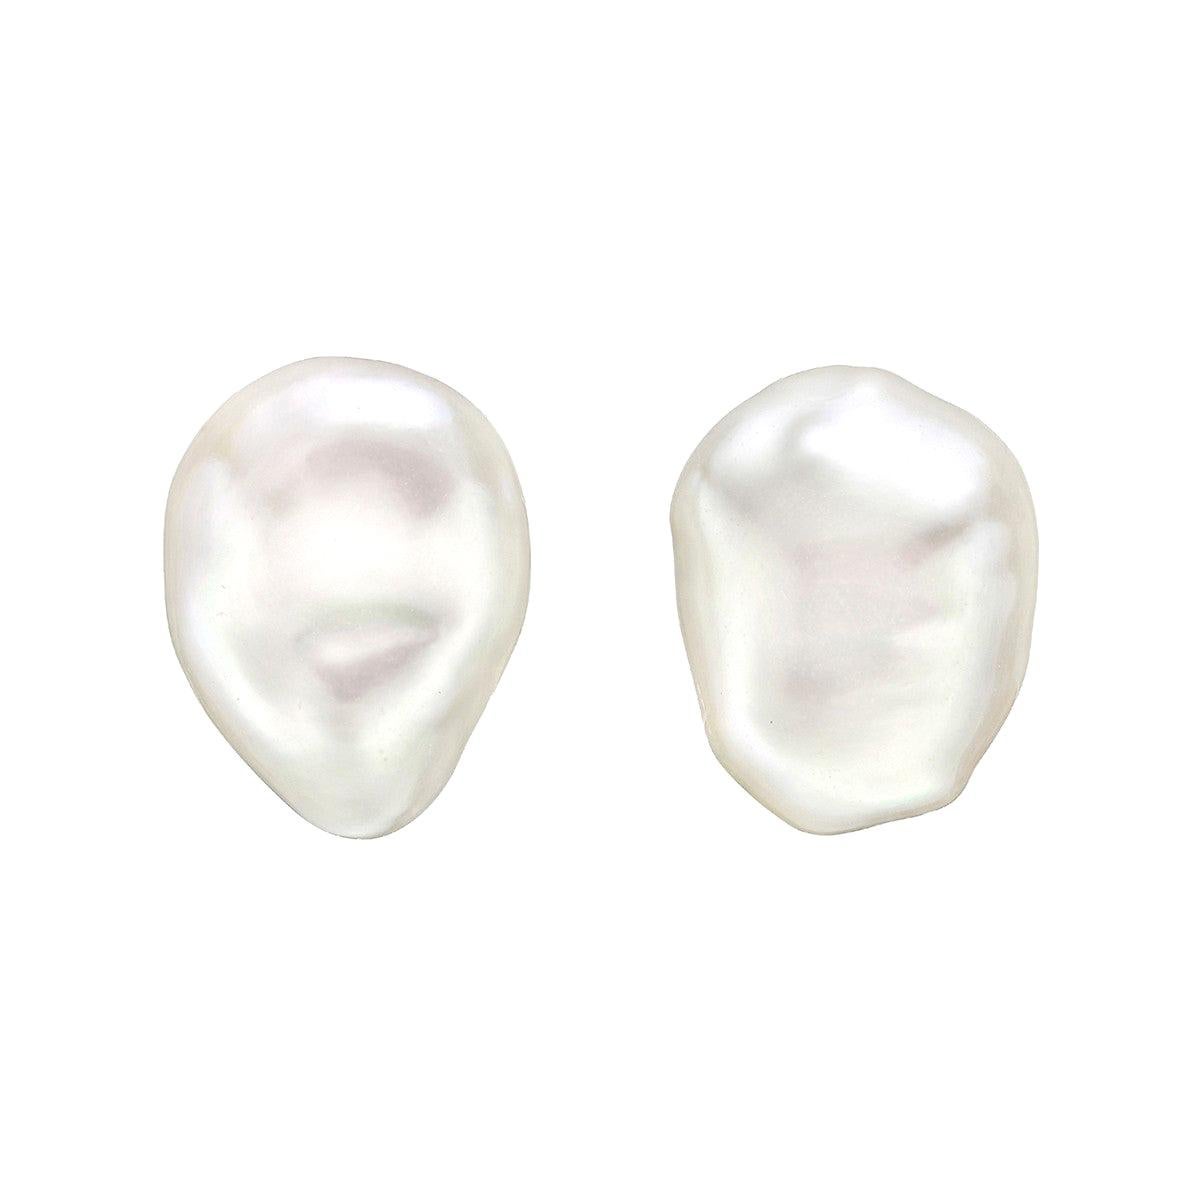 Trianon Freshwater Pearl "Souffle" Earrings